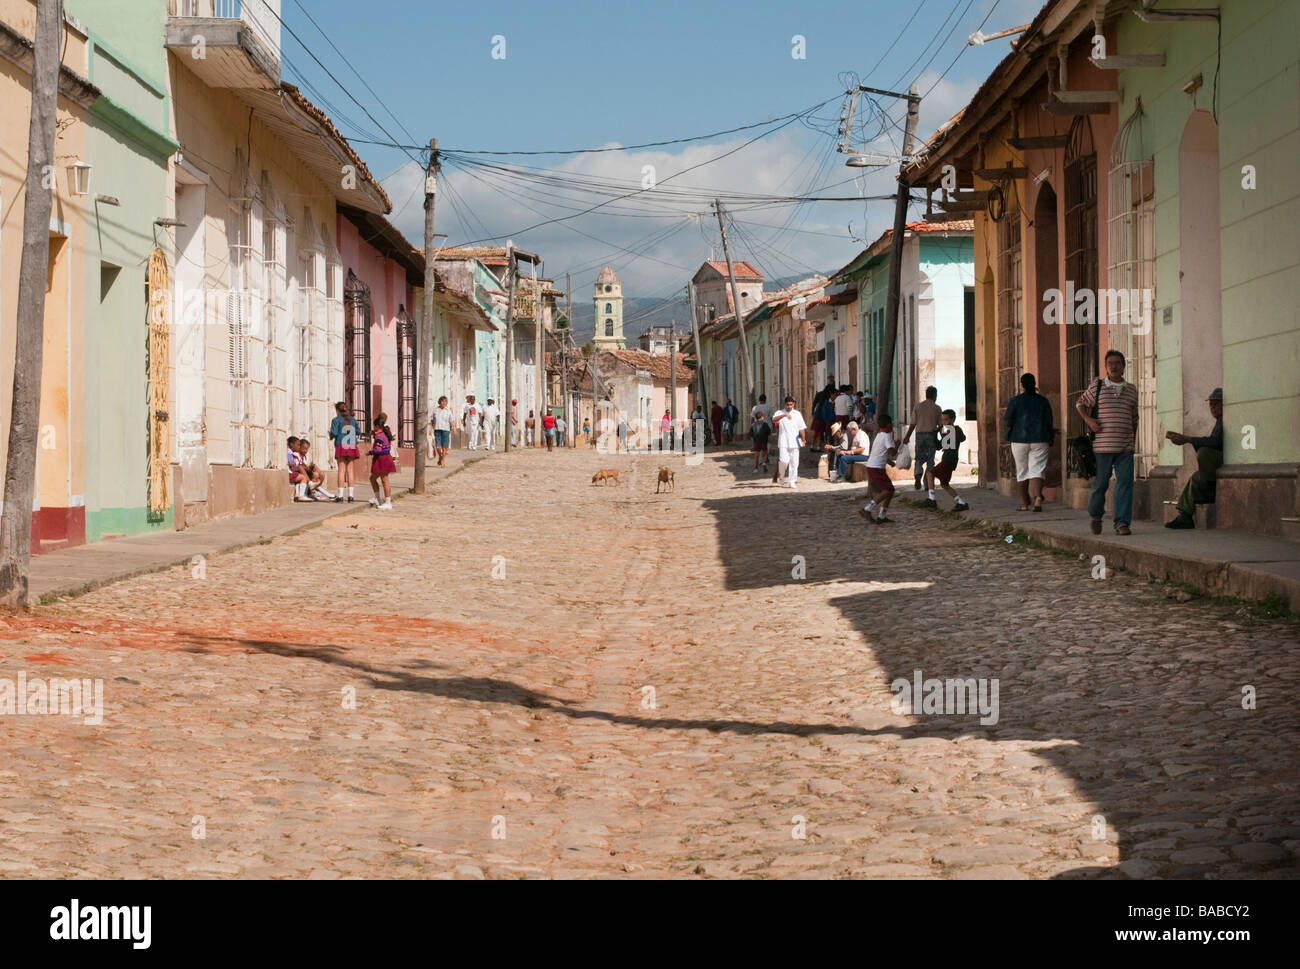 Scena di strada nel villaggio coloniale di Trinidad, Cuba. Foto Stock